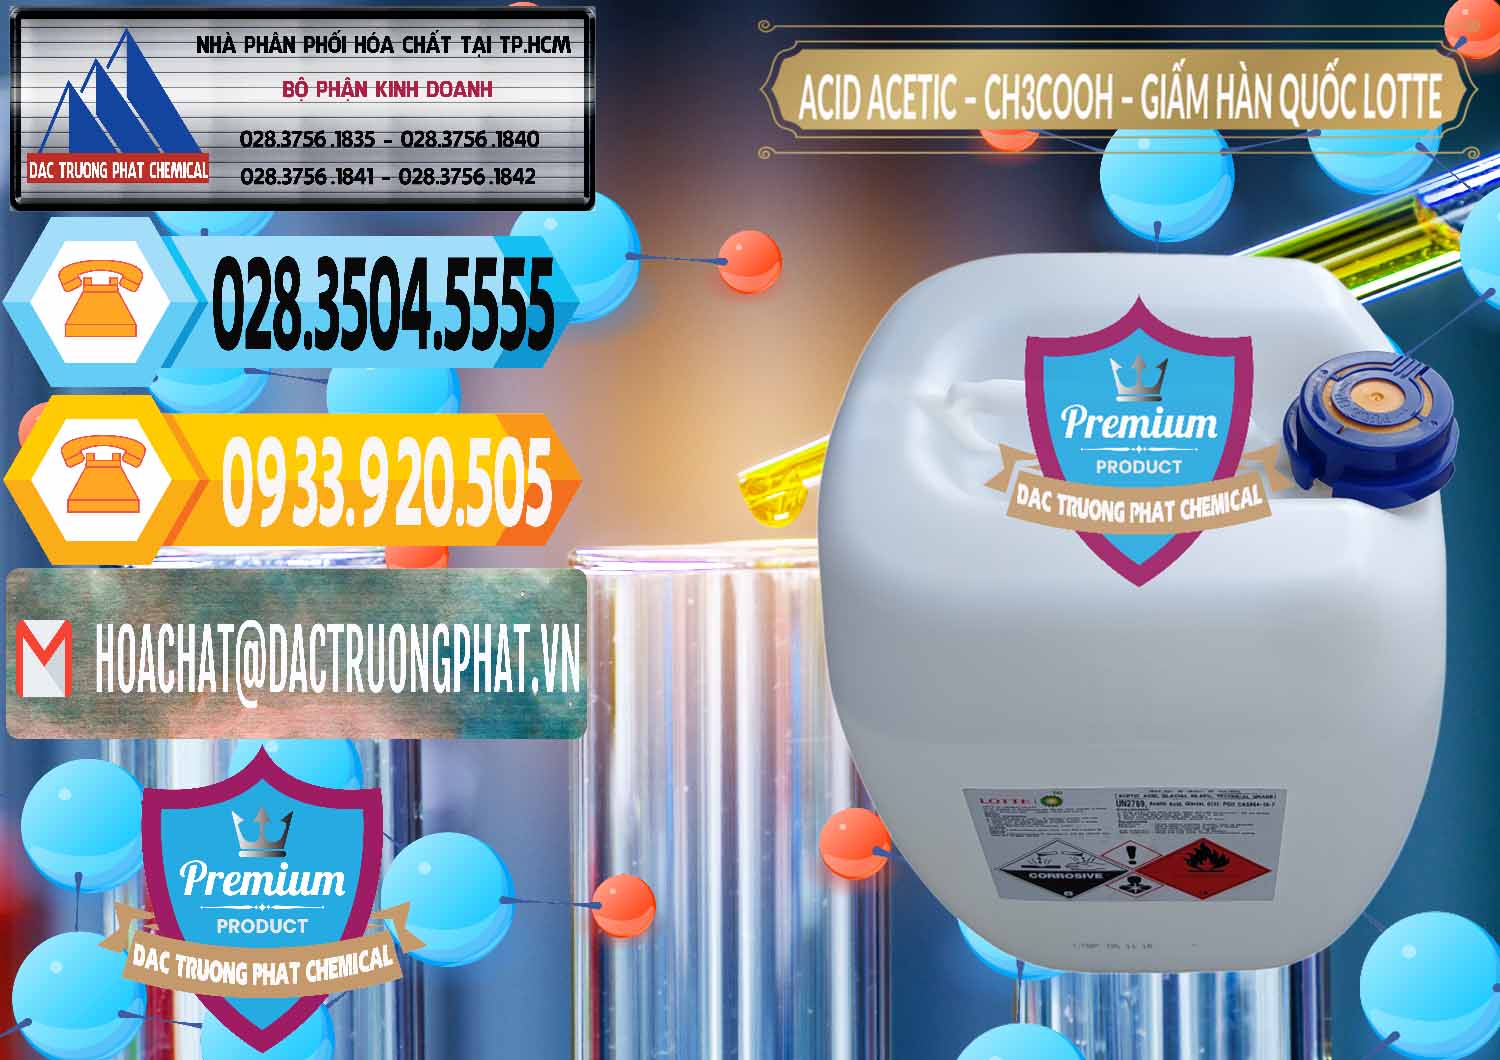 Đơn vị chuyên nhập khẩu _ bán Acetic Acid – Axit Acetic Hàn Quốc Lotte Korea - 0002 - Đơn vị nhập khẩu - cung cấp hóa chất tại TP.HCM - hoachattayrua.net